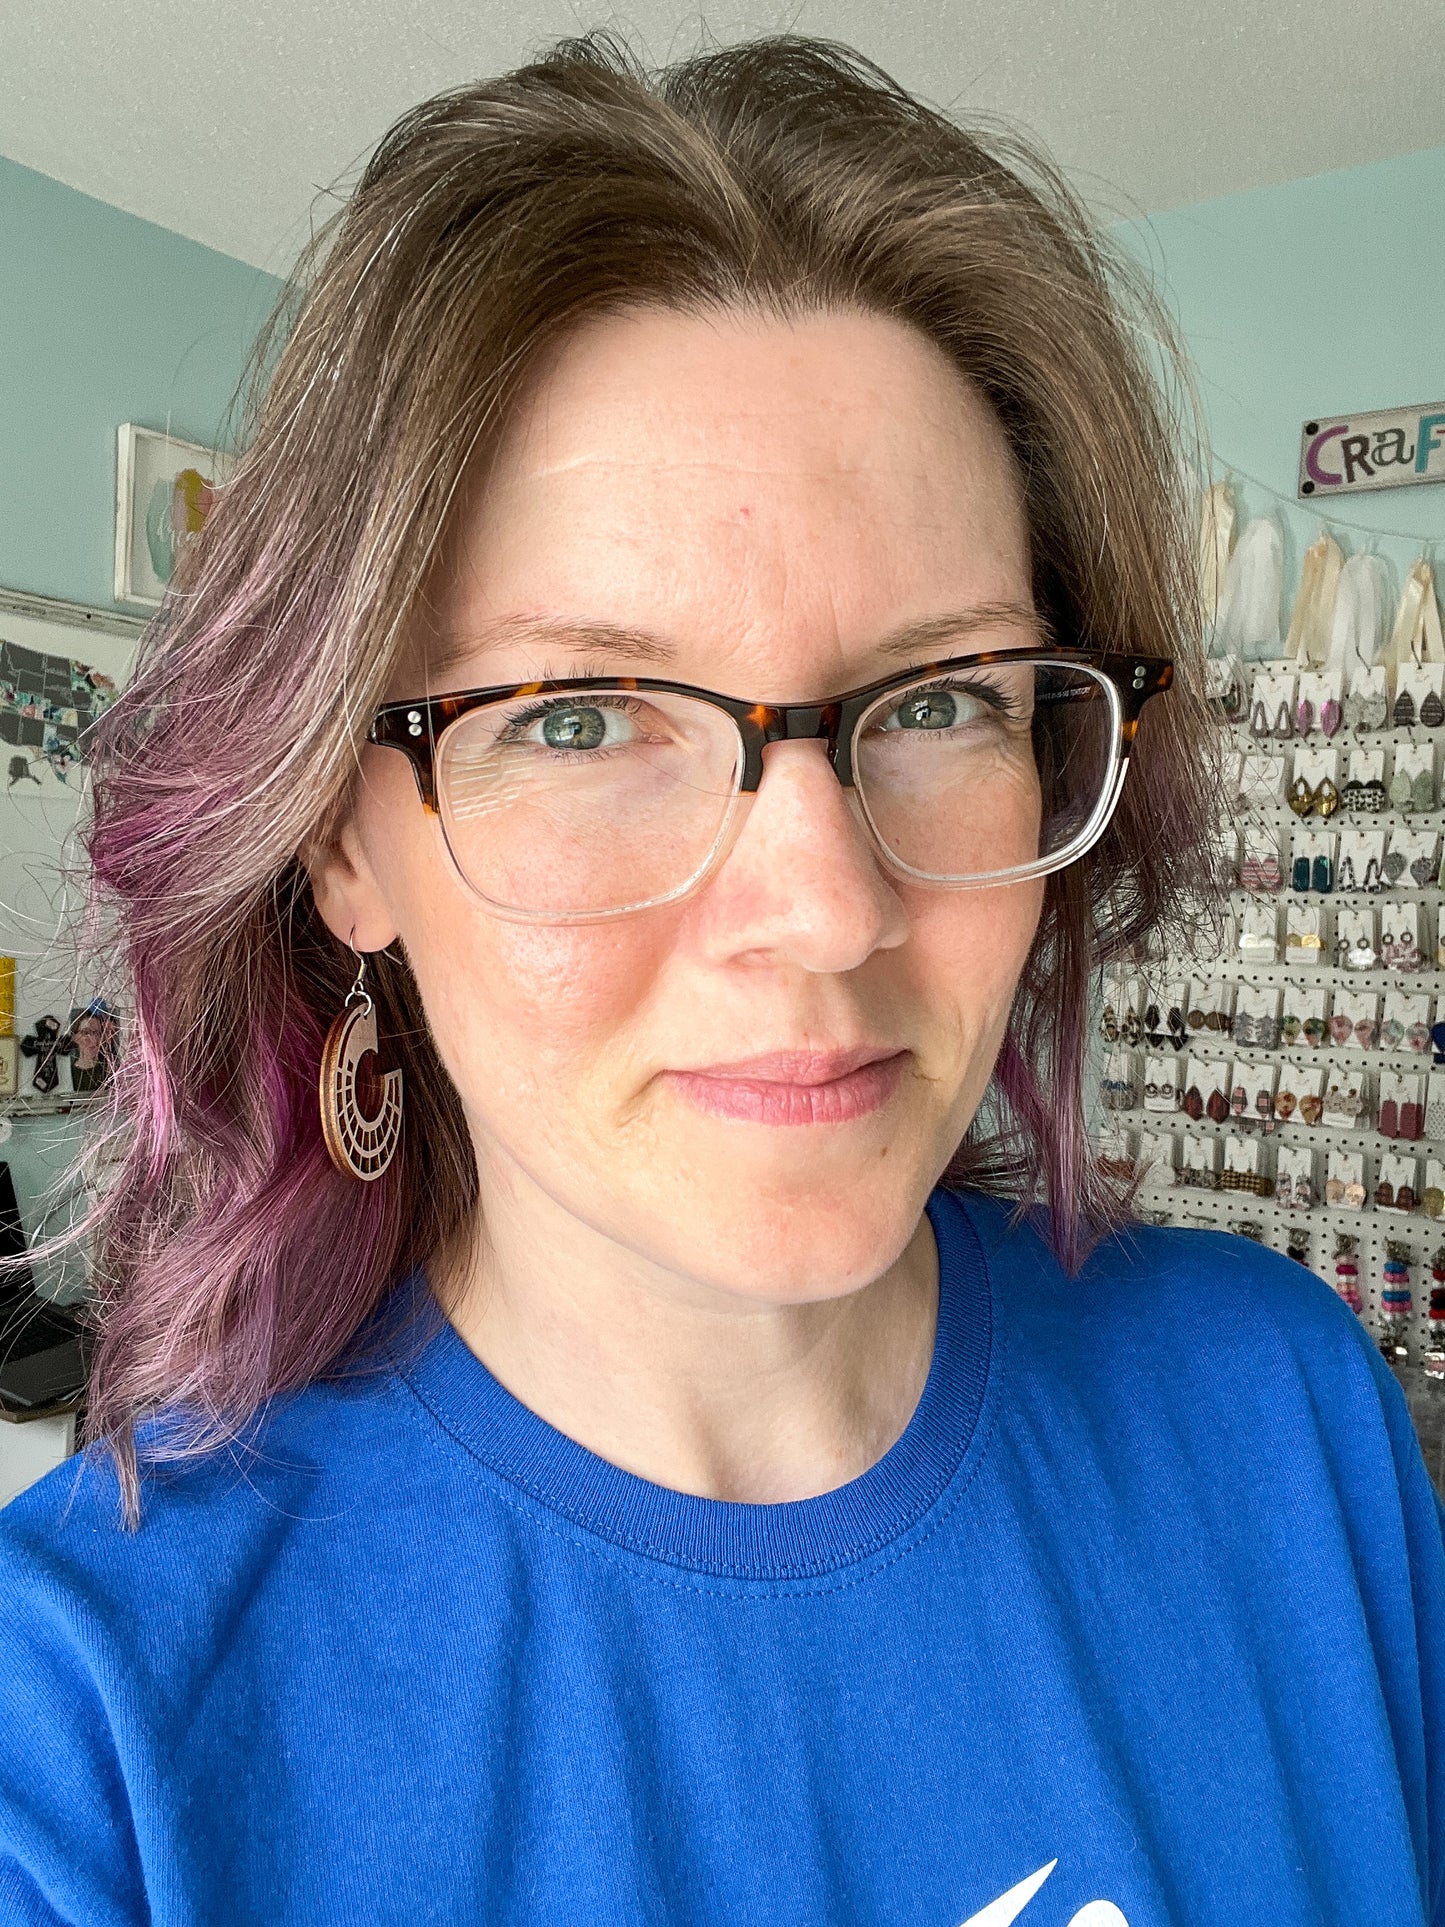 Side Hoop Dyed Wood Earrings: Choose From 2 Colors